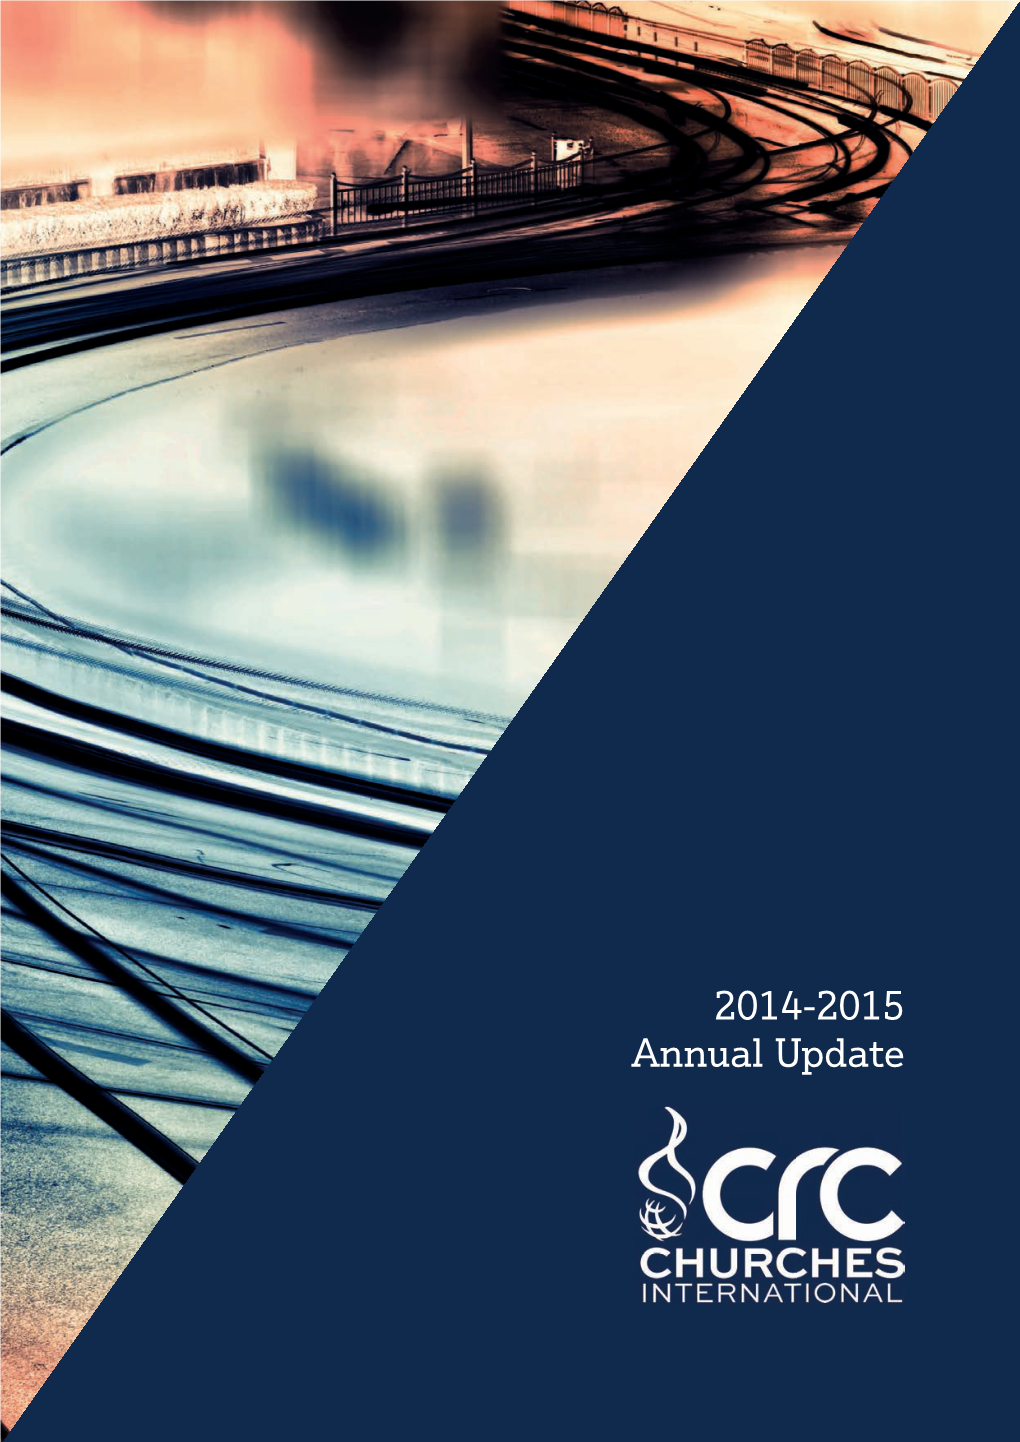 Annual Update CRC Churches 20142015.Indd